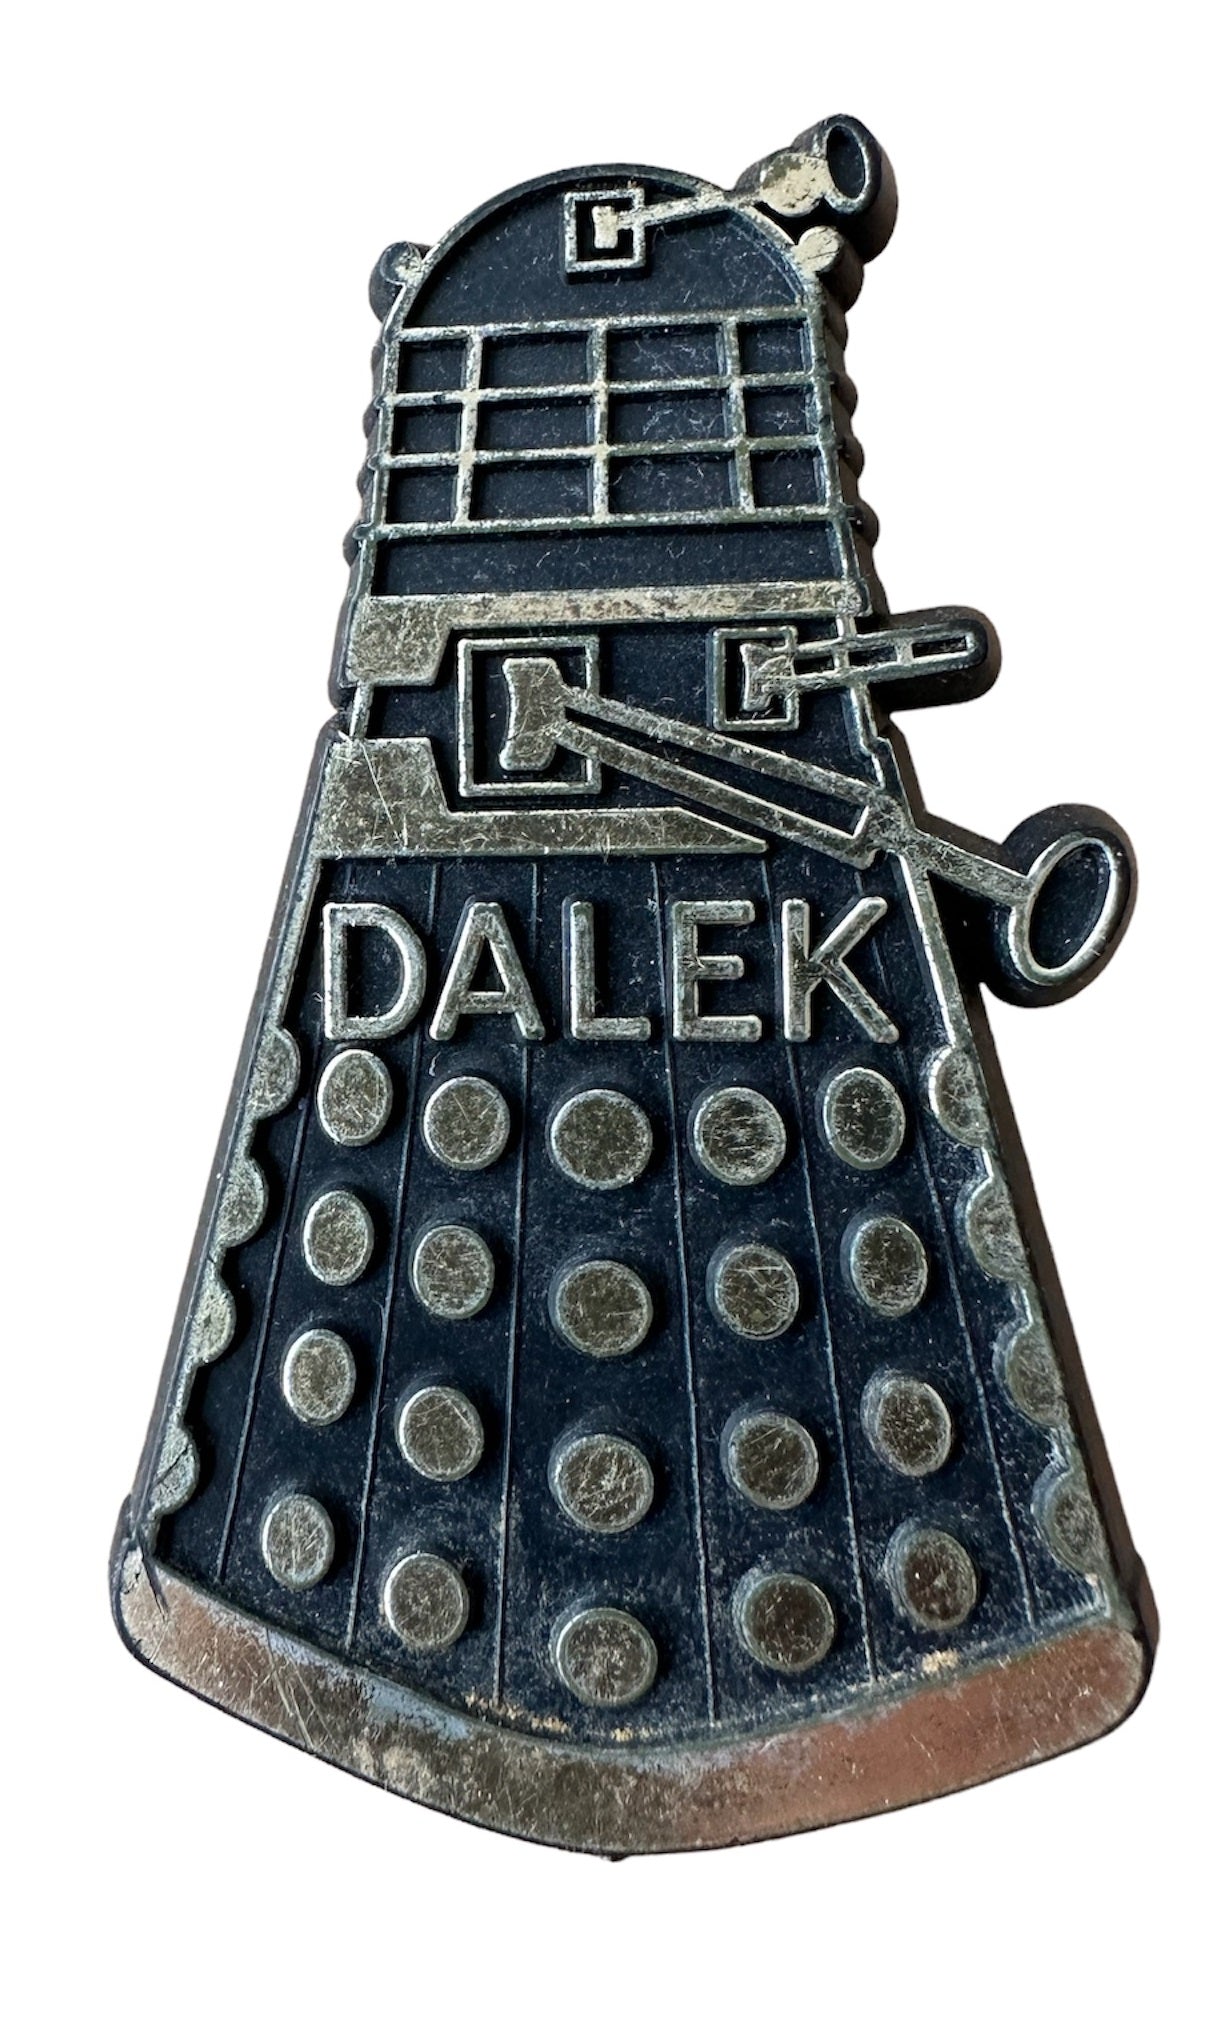 Vintage 1965 Doctor Dr Who & The Daleks Plastoid Ltd Dalek Badge / Pin Black And Gold - 3 Inch Version - Fantastic Condition